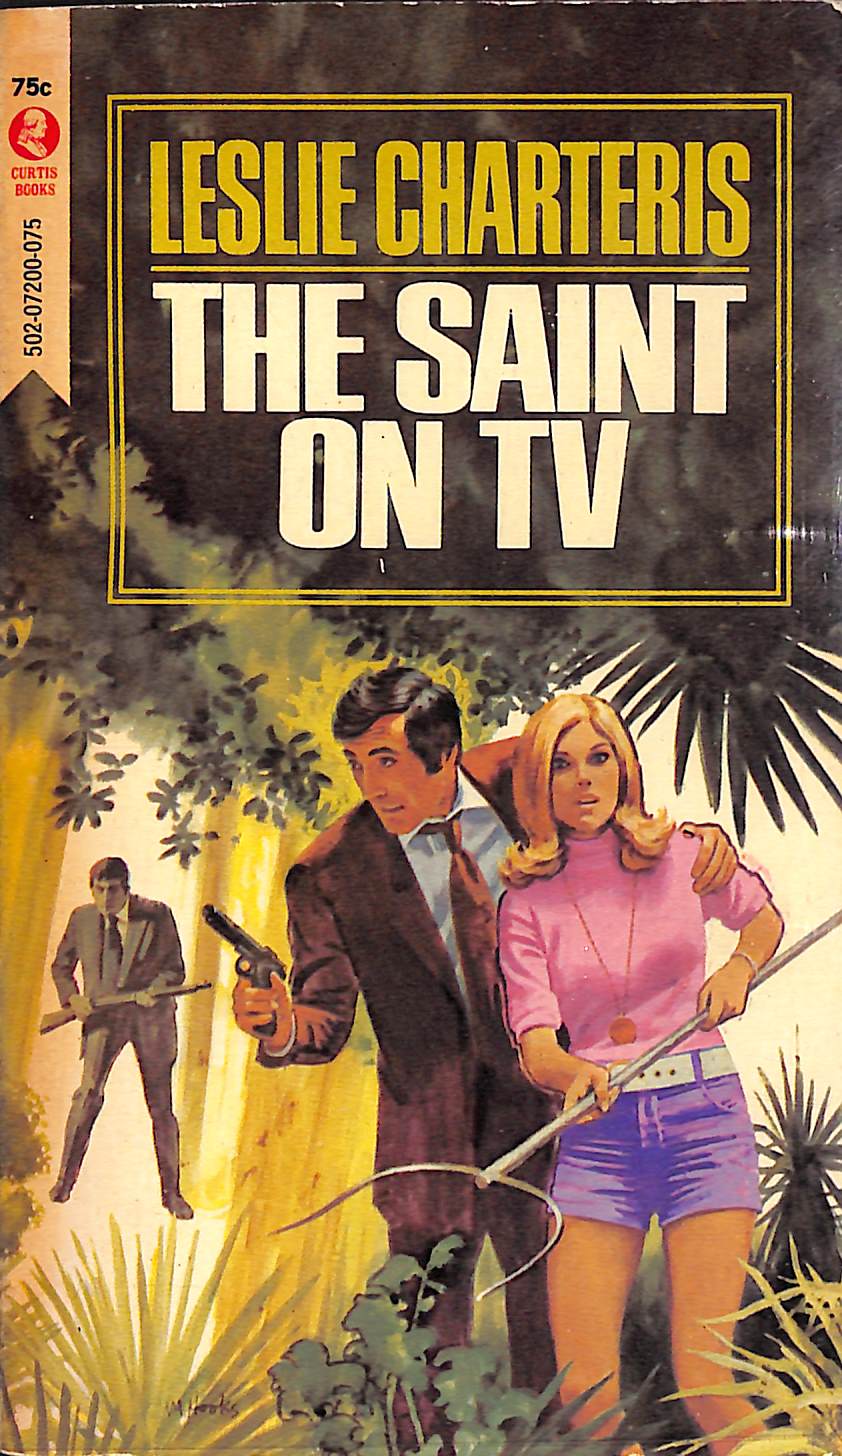 "The Saint On TV" 1968 CHARTERIS, Leslie